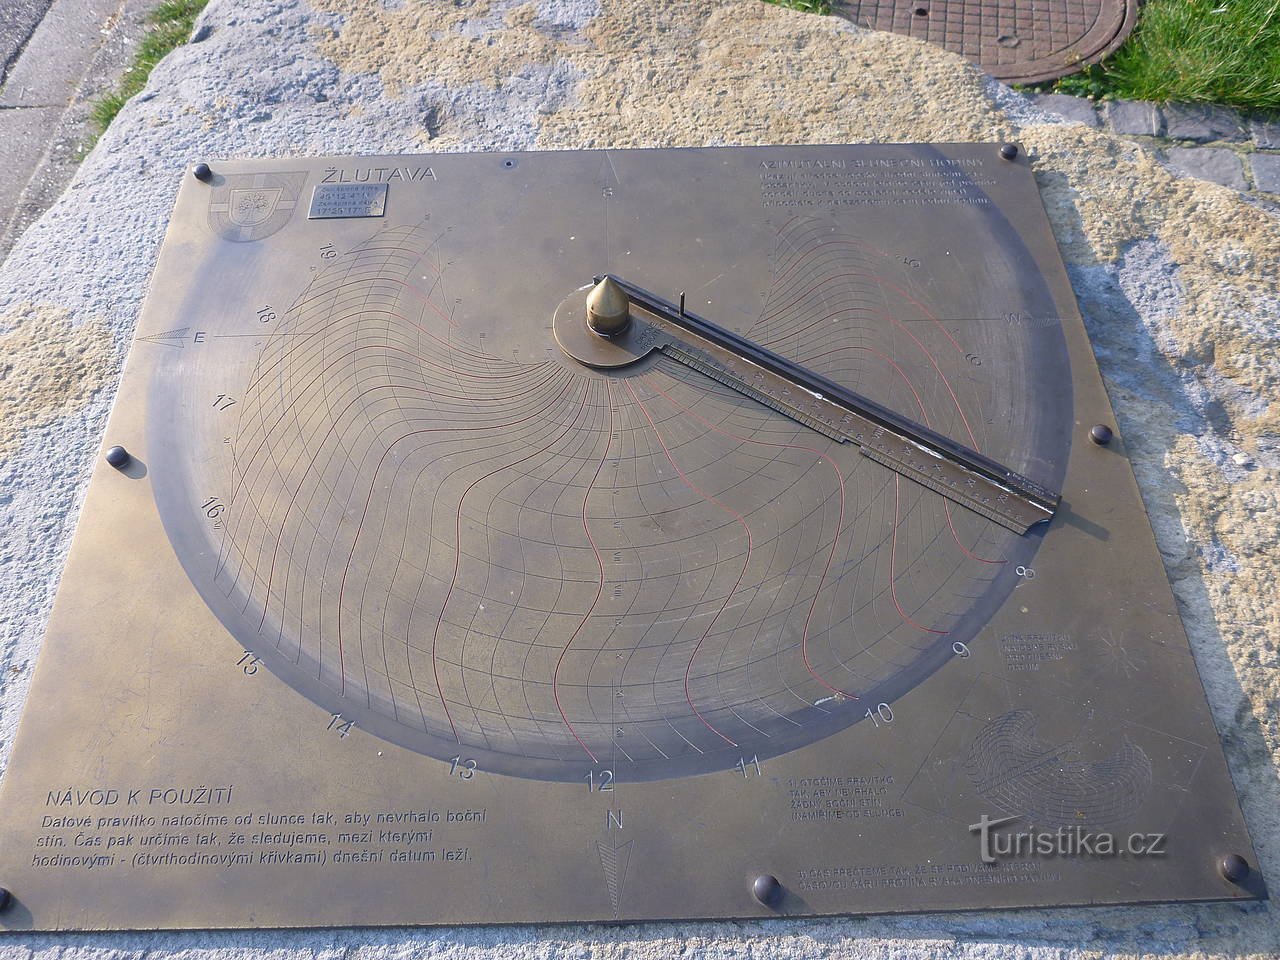 Ασυνήθιστο ηλιακό ρολόι στη Ζλουτάβα.